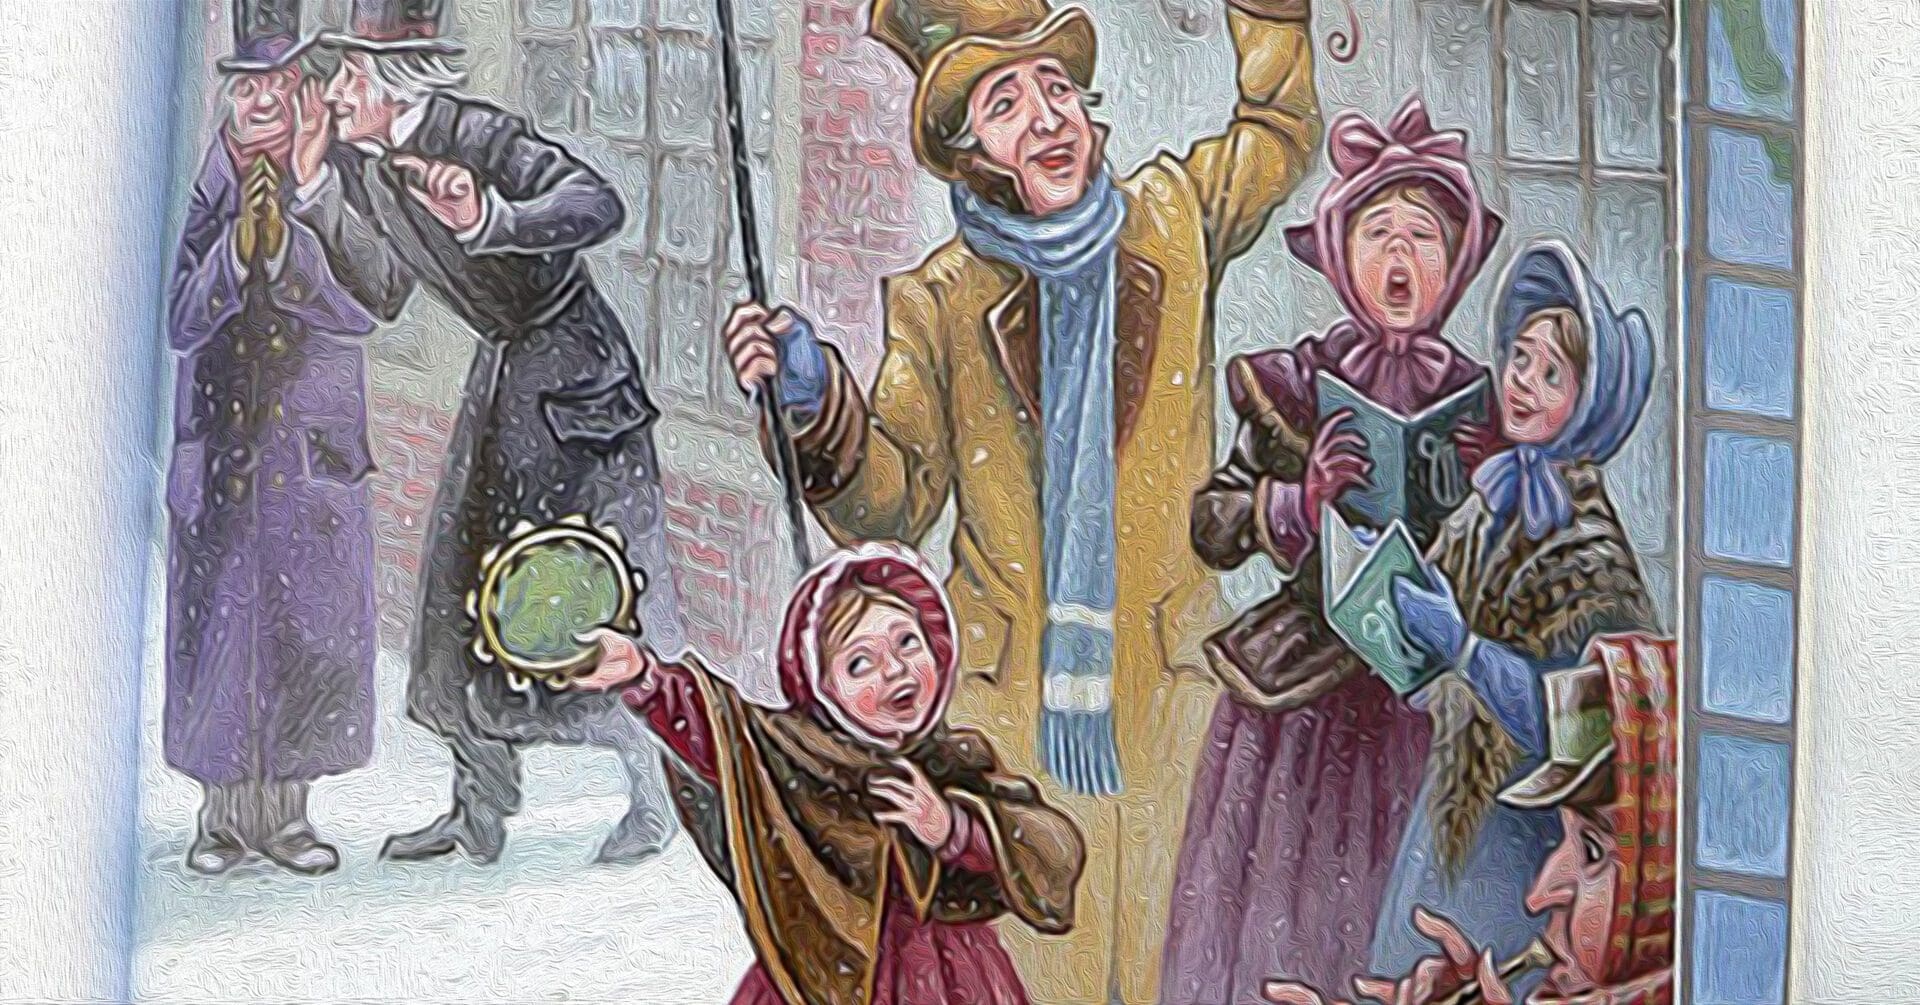 група людей, які співають пісні в сніжному місті 19-го століття